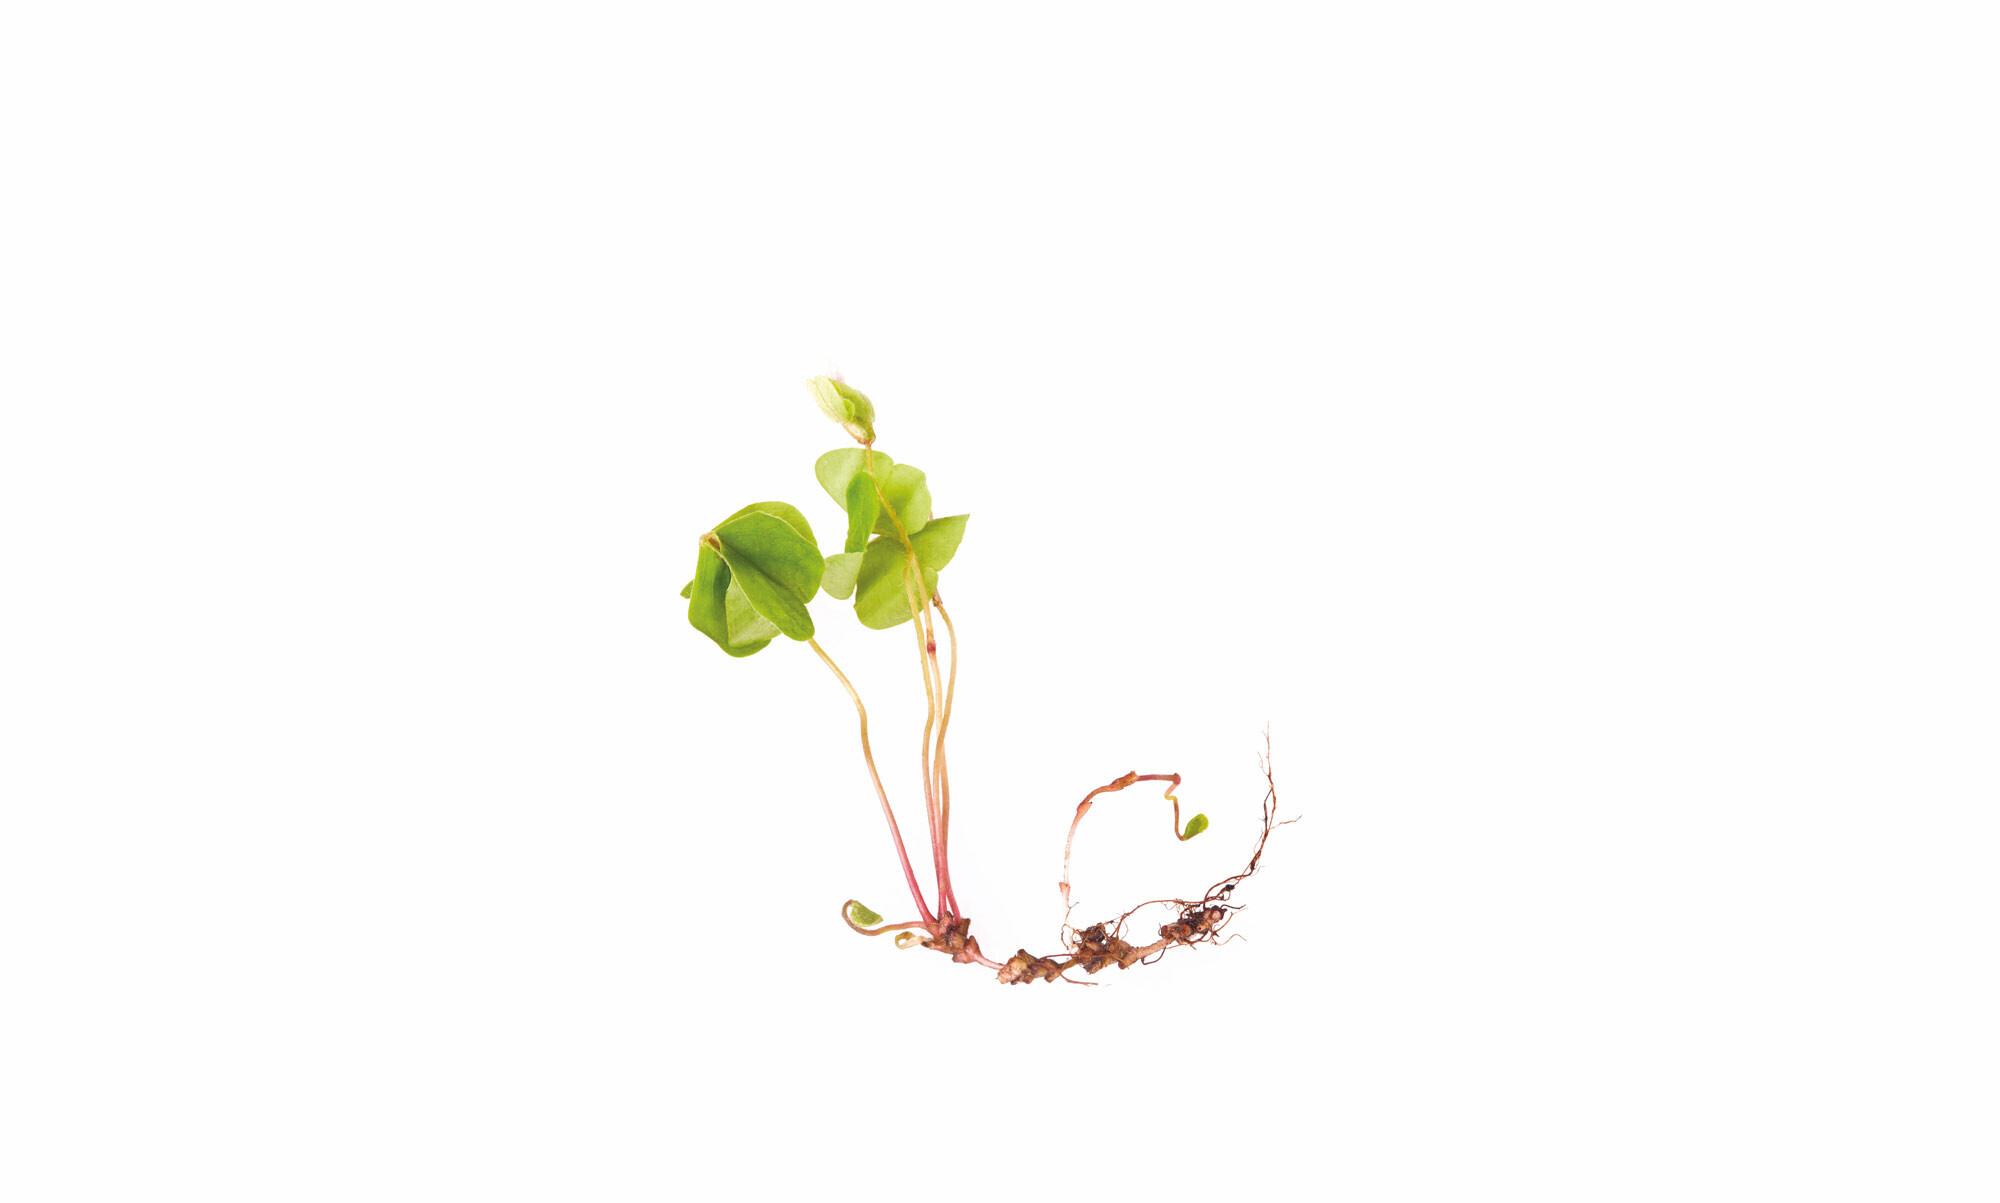 Freigestellte Pflanze mit gesunder Wurzel auf weißem Hintergrund Meller_Zahngesundheit_Zahnarzt_Waiblingen_Praxis_Ueberweiserpraxis_iStock-1222212921.jpg